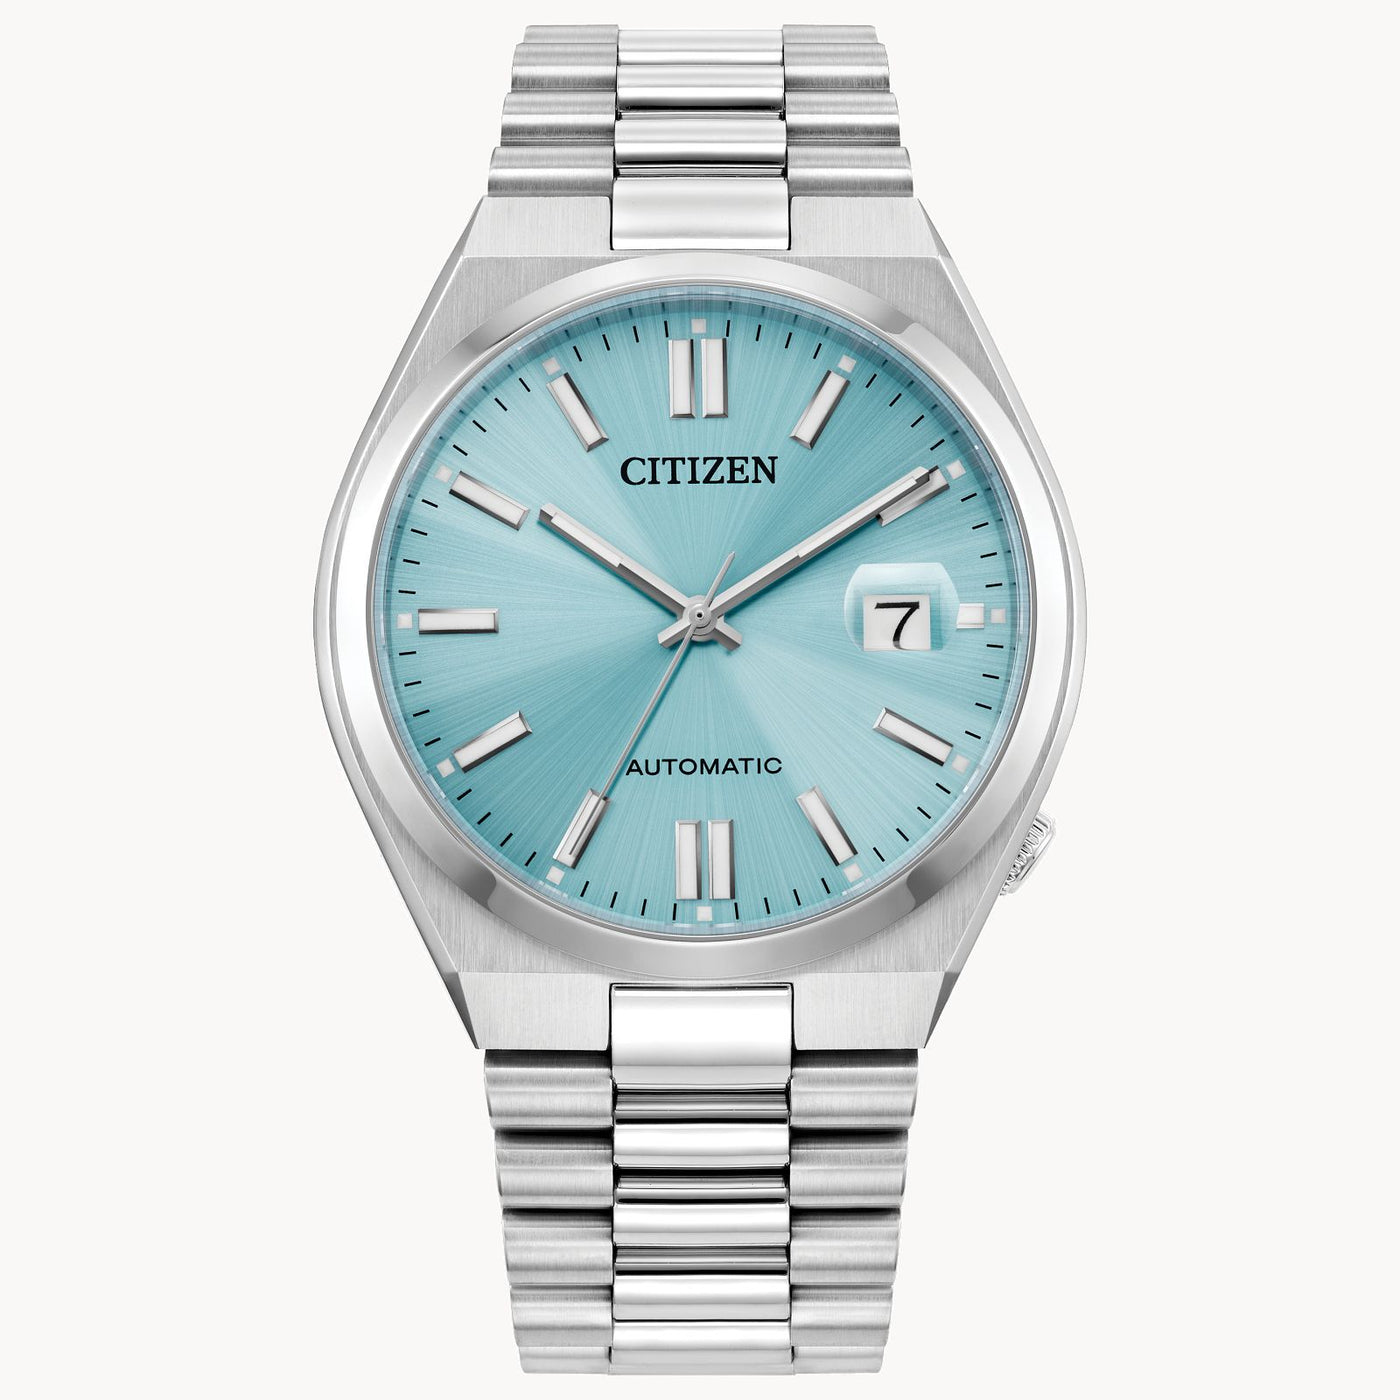 Citizen Men's watch